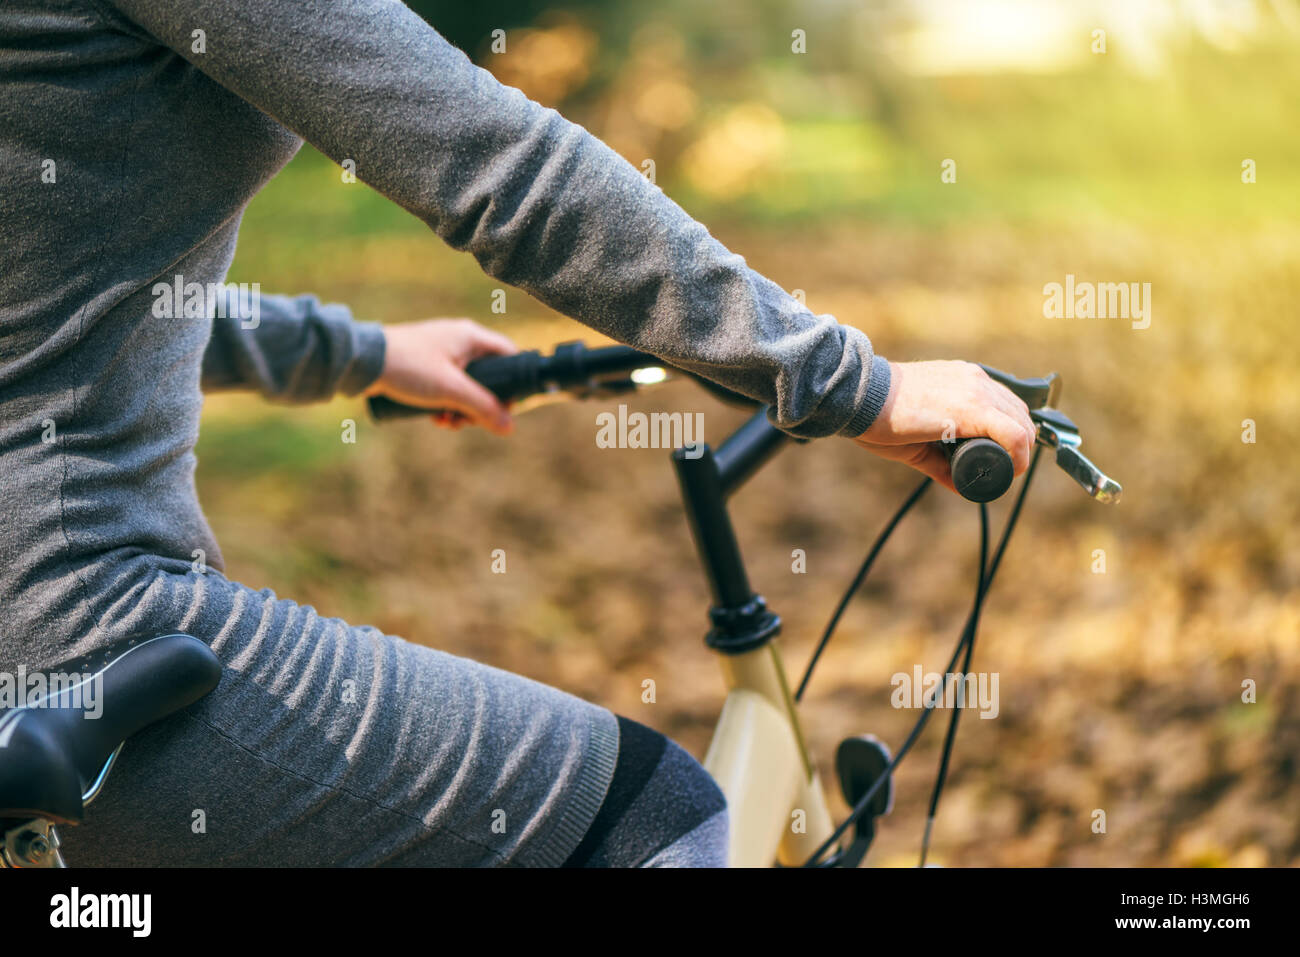 Unkenntlich attraktive junge Erwachsene Frau mit Vintage retro-Bike, Radfahren oder pendeln, ökologisches Verkehrskonzept. Stockfoto